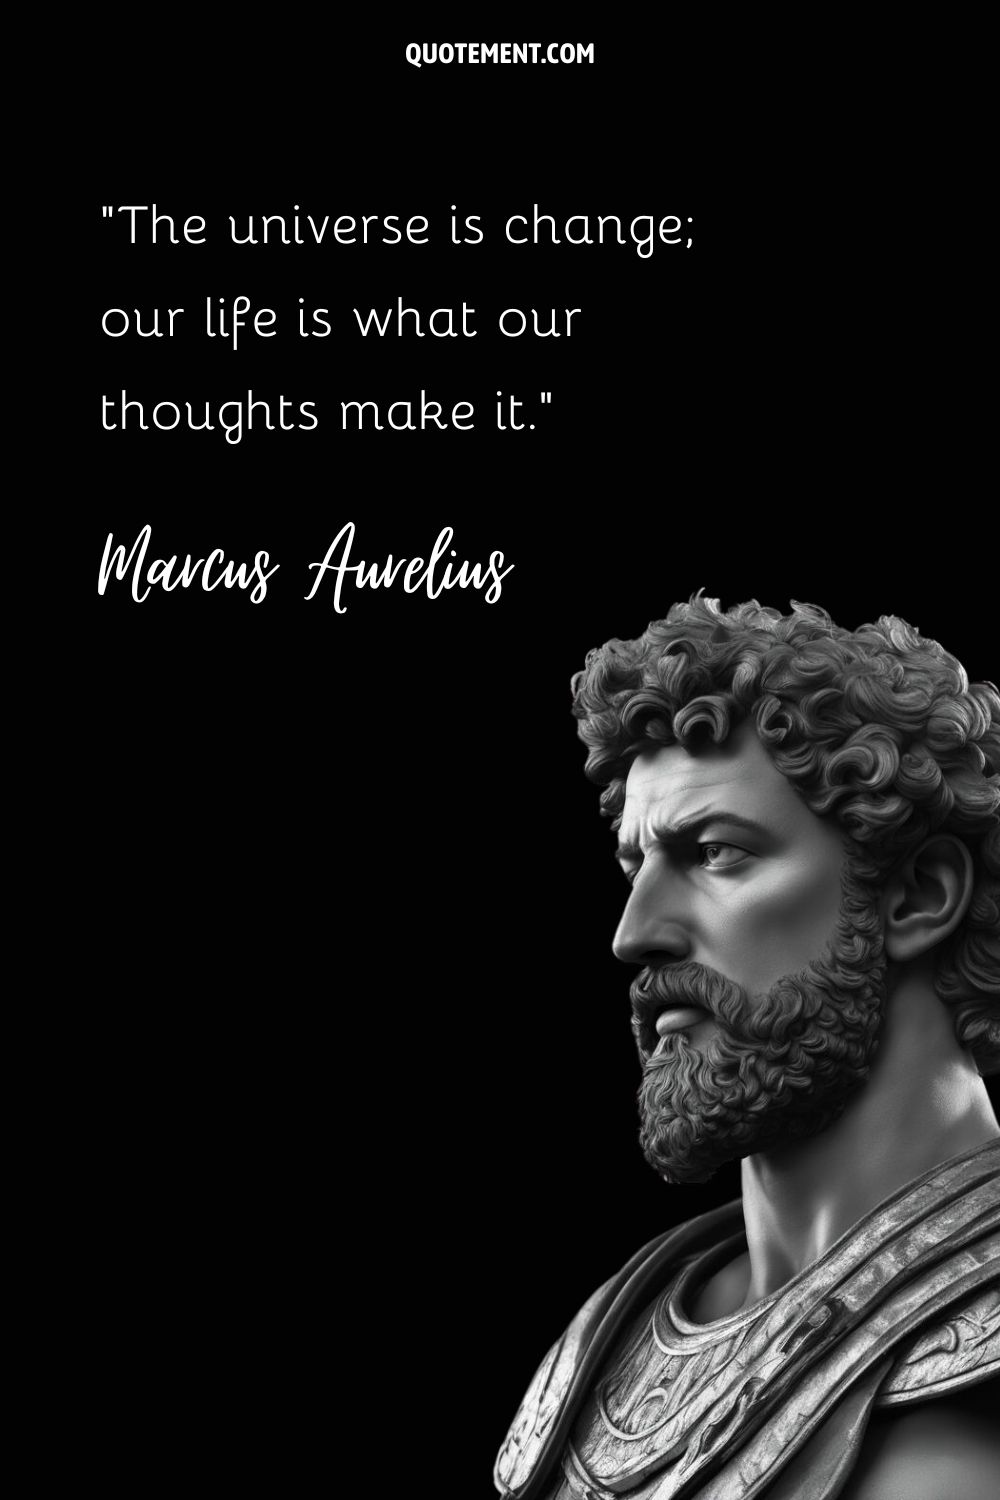 Philosophical mind revealed in Marcus Aurelius' timeless sculpture.
